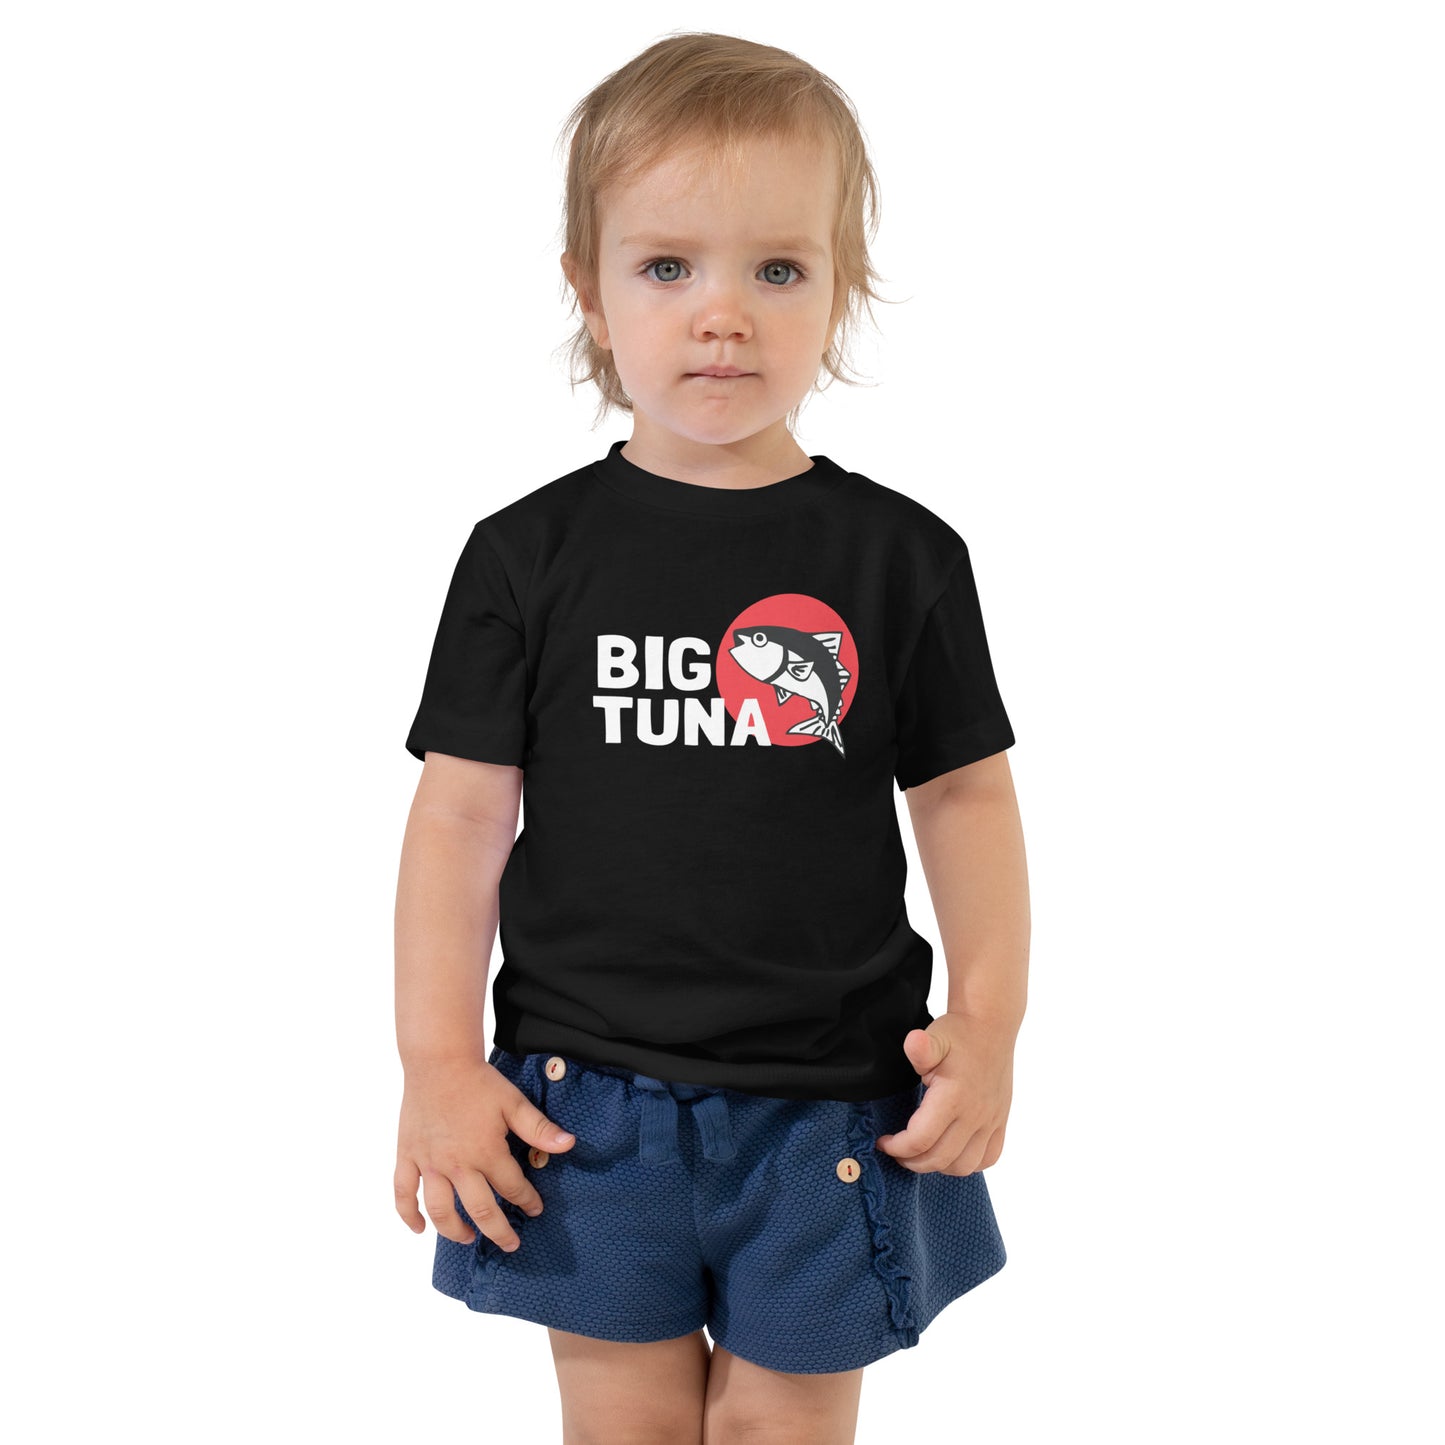 Toddler Tuna Short Sleeve Tee